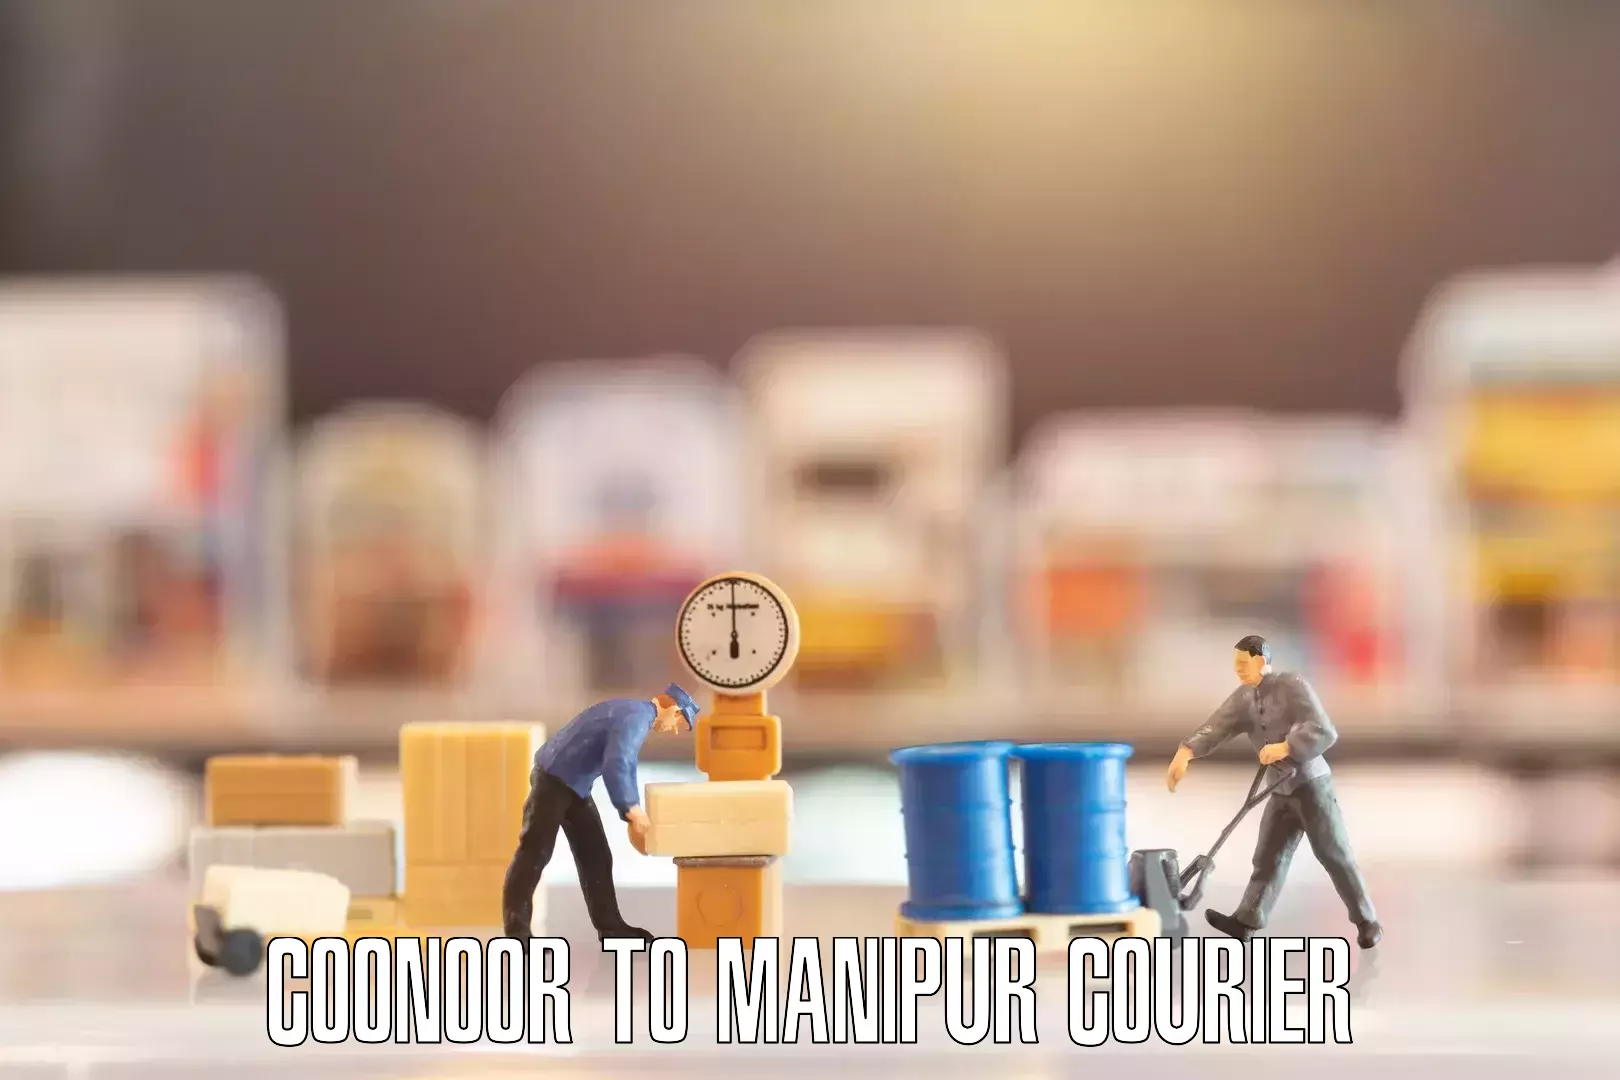 Furniture relocation experts Coonoor to Churachandpur